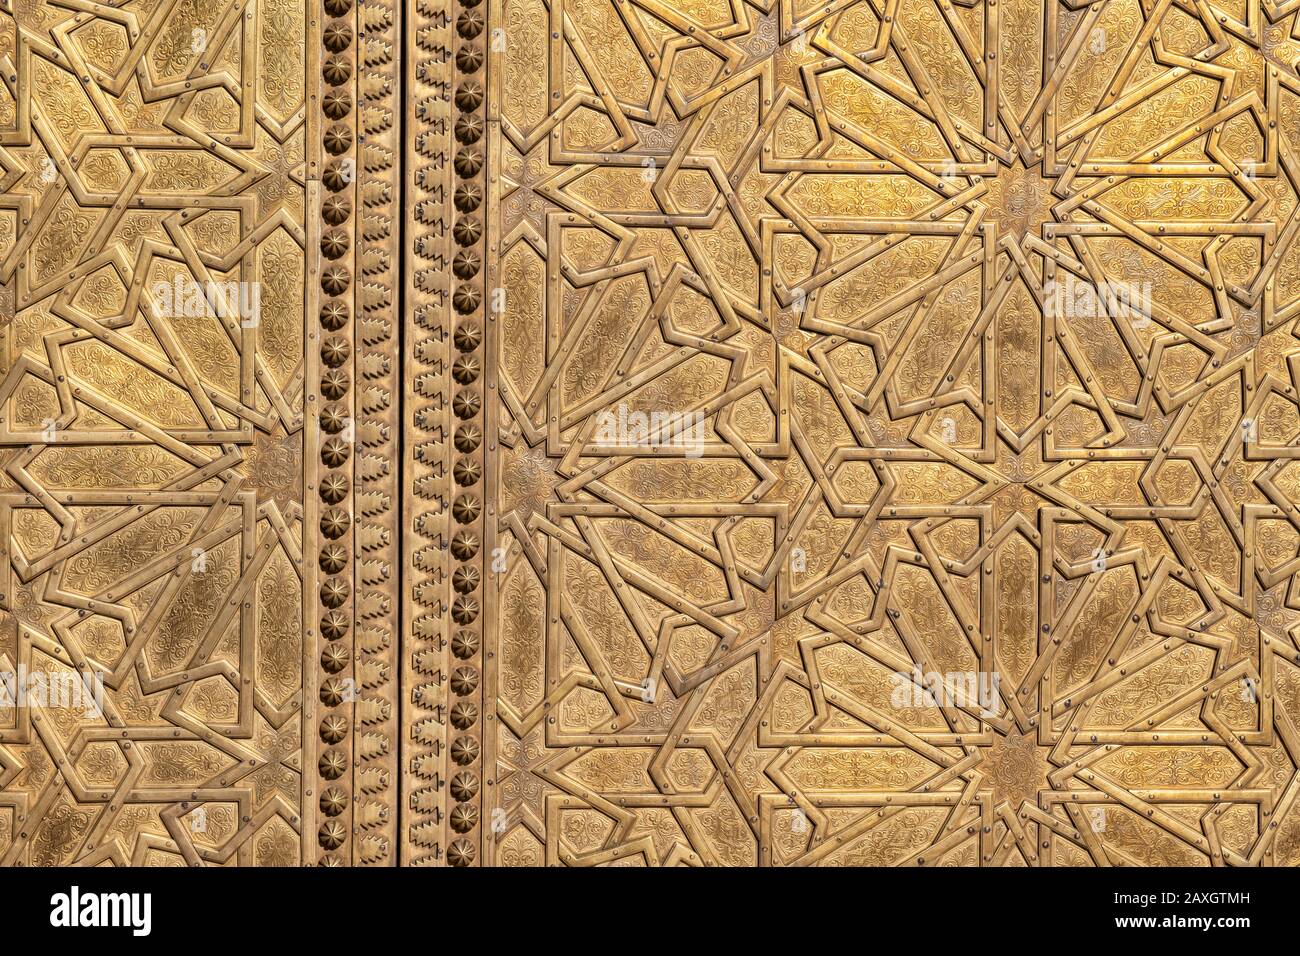 Porte d'or de la porte du palais royal à Fès, Maroc. Motif étoiles géométriques islamiques traditionnel. Banque D'Images